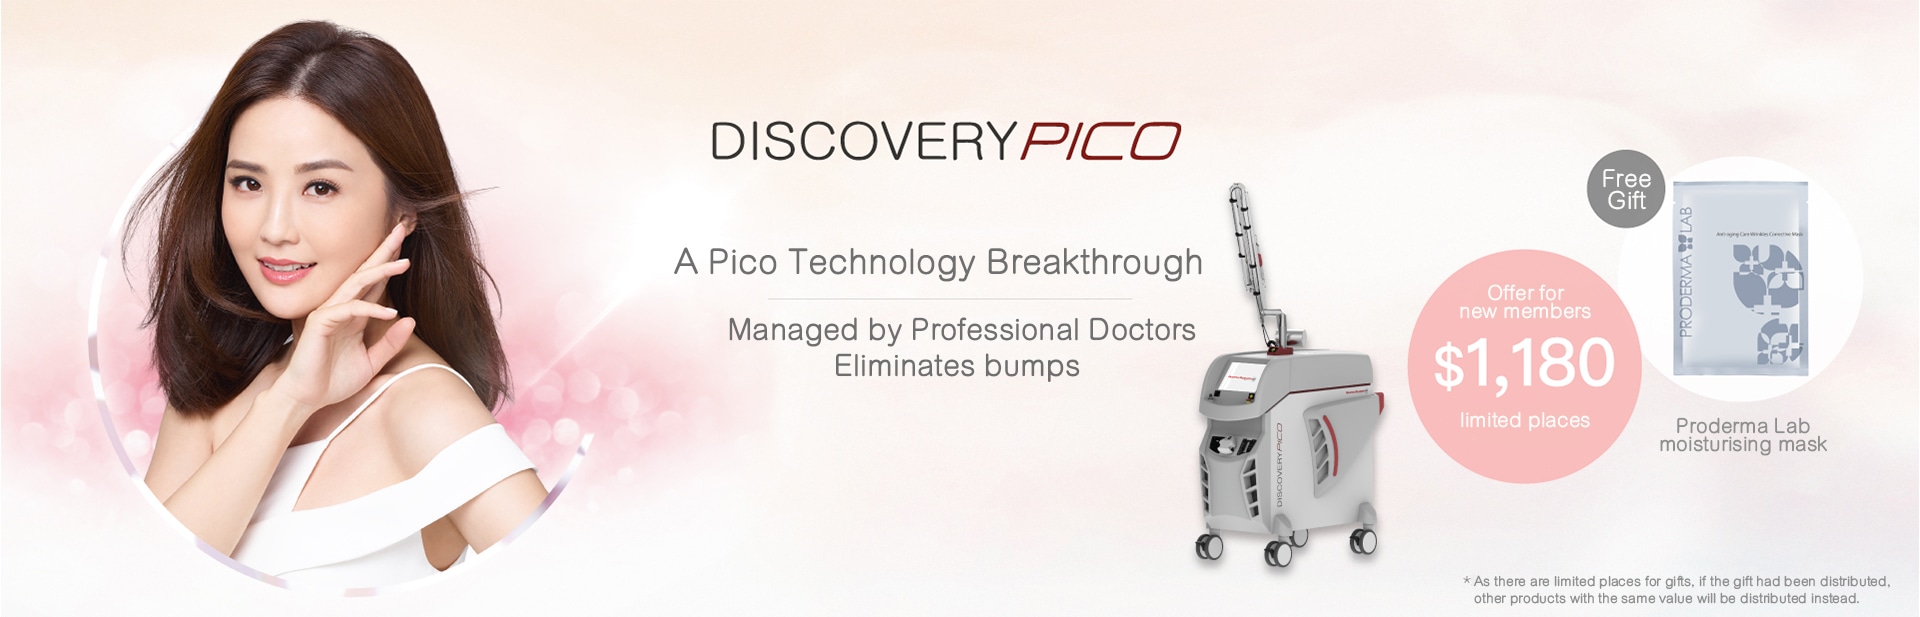 Discovery Pico 價錢